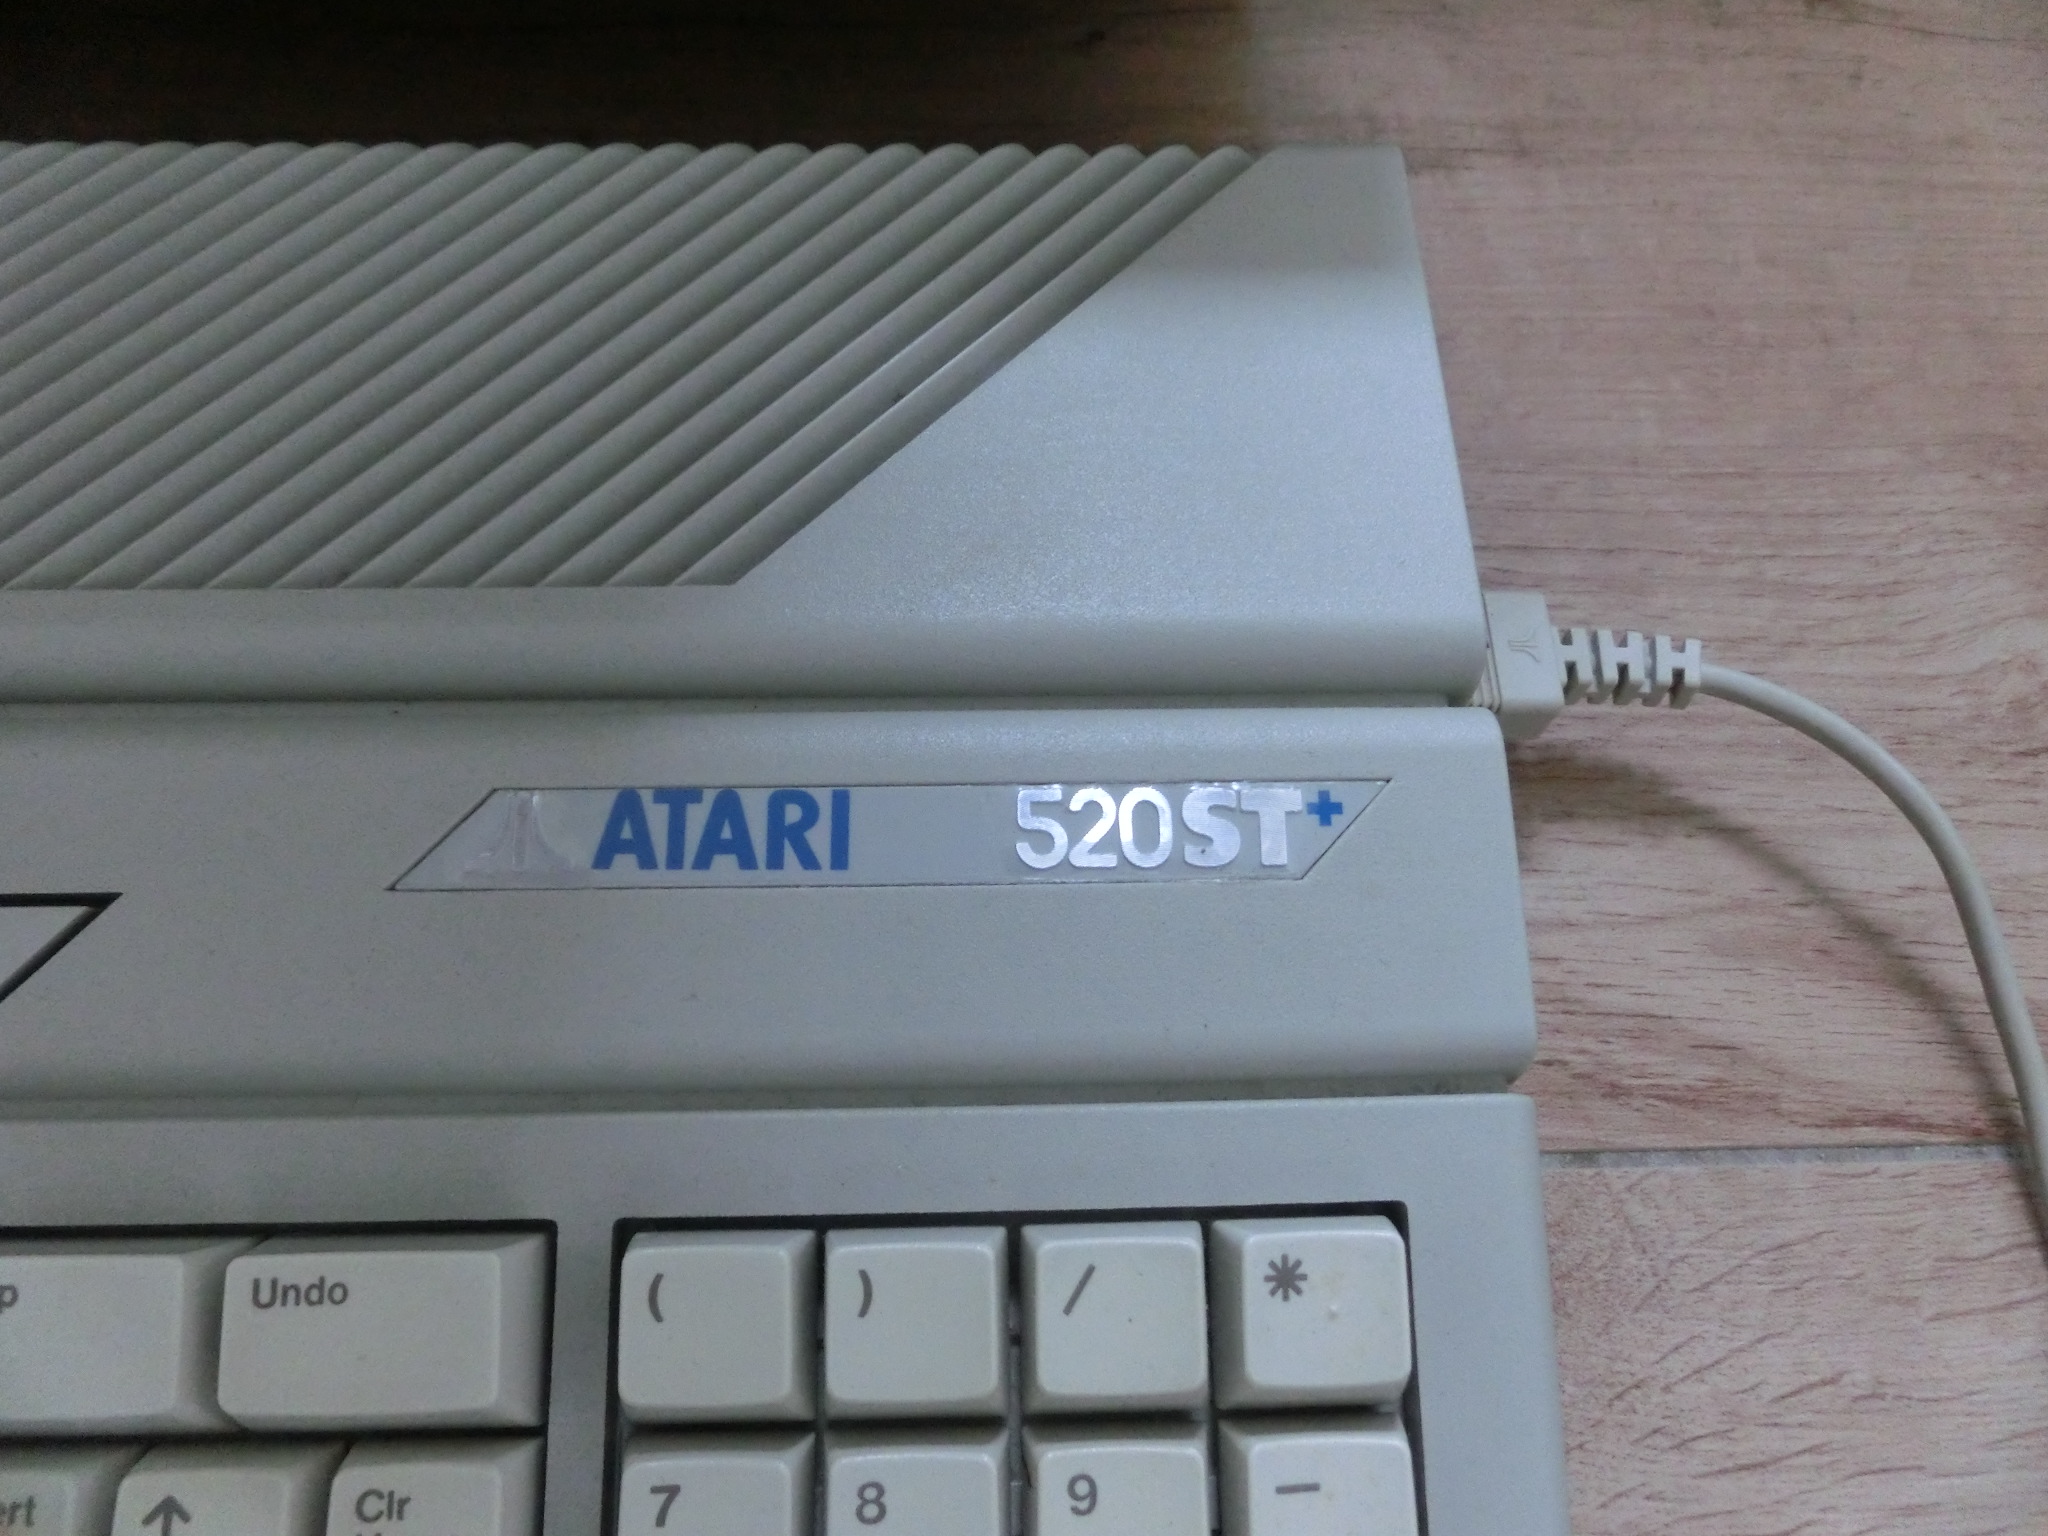 Atari 520 ST plus